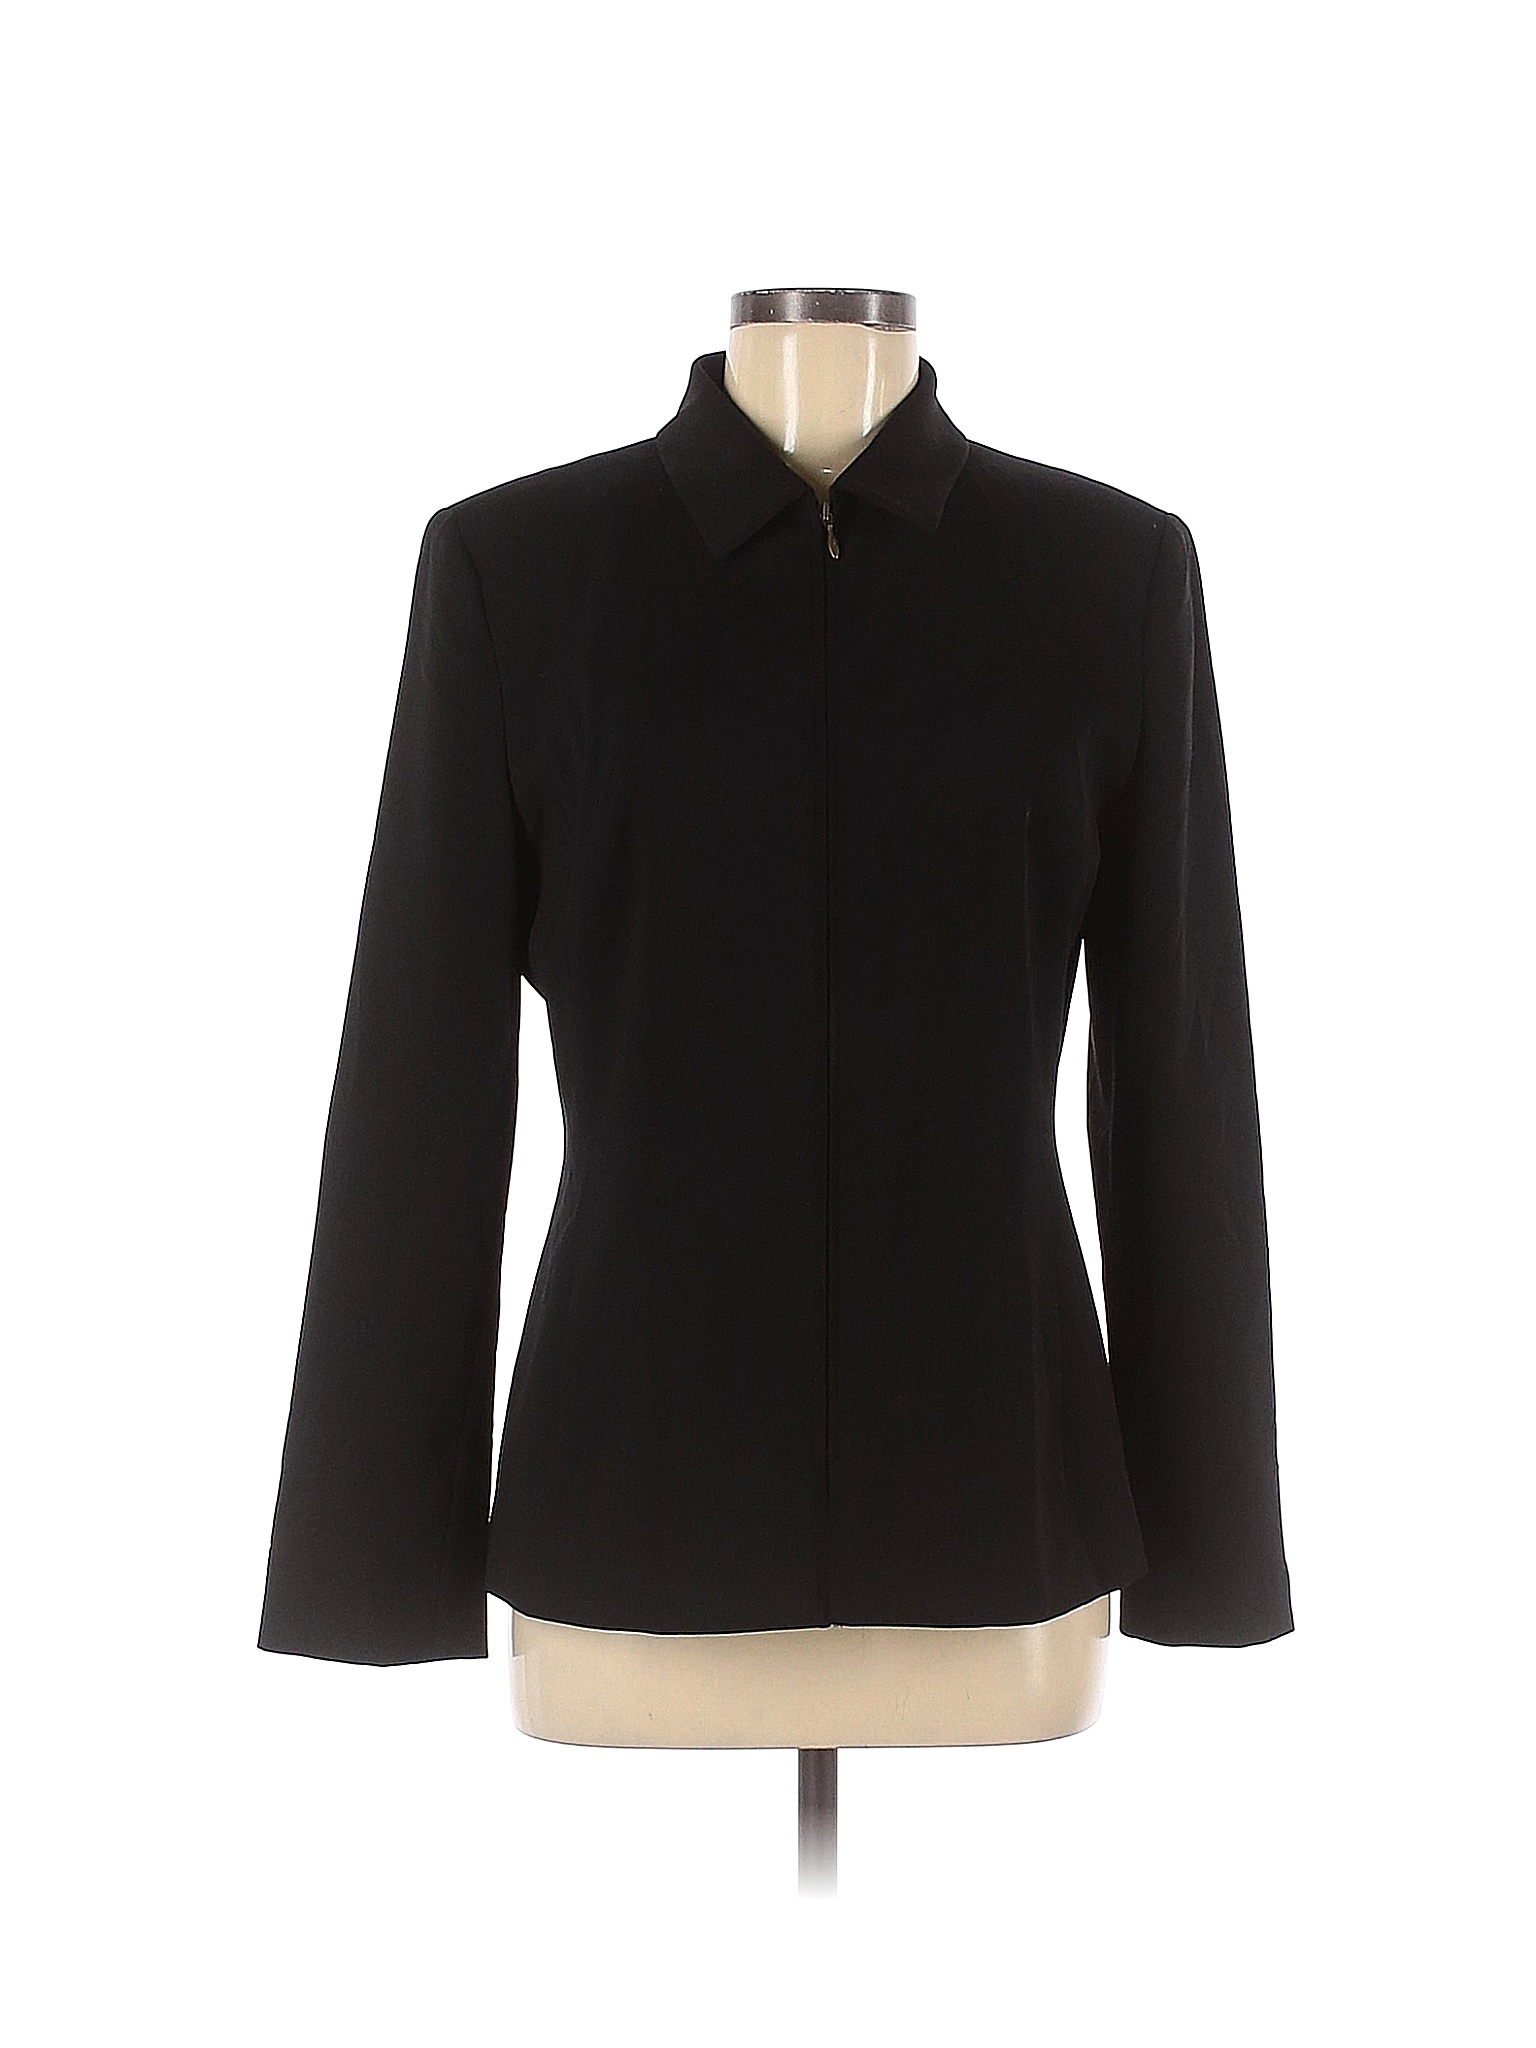 Valerie Stevens Solid Black Blazer Size 8 - 75% off | thredUP